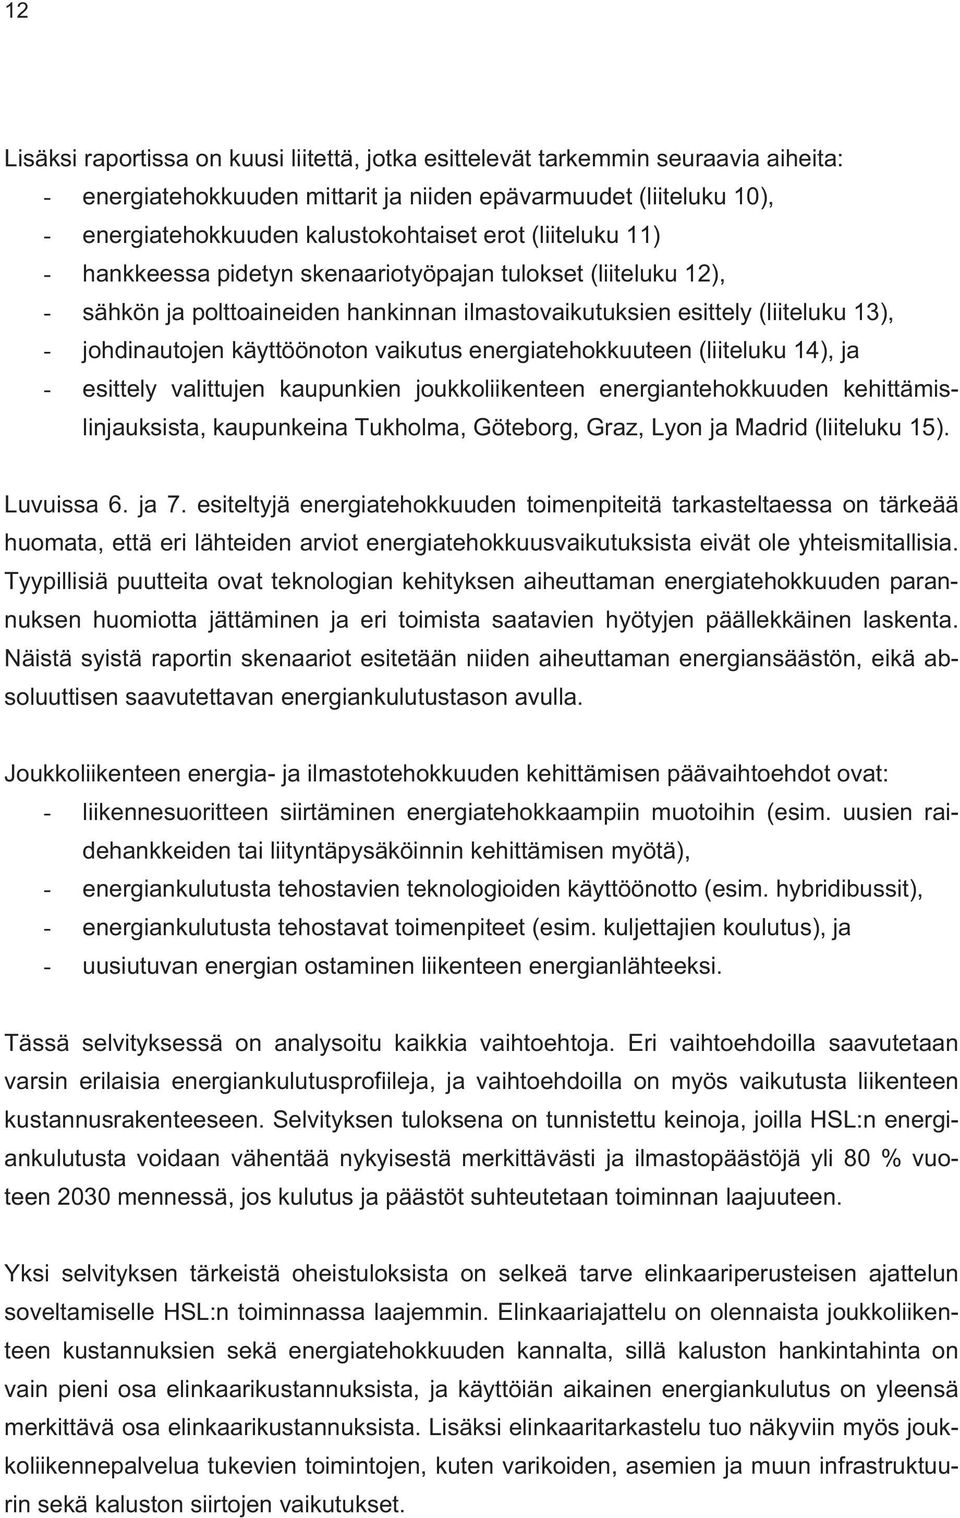 energiatehokkuuteen (liiteluku 14), ja - esittely valittujen kaupunkien joukkoliikenteen energiantehokkuuden kehittämislinjauksista, kaupunkeina Tukholma, Göteborg, Graz, Lyon ja Madrid (liiteluku